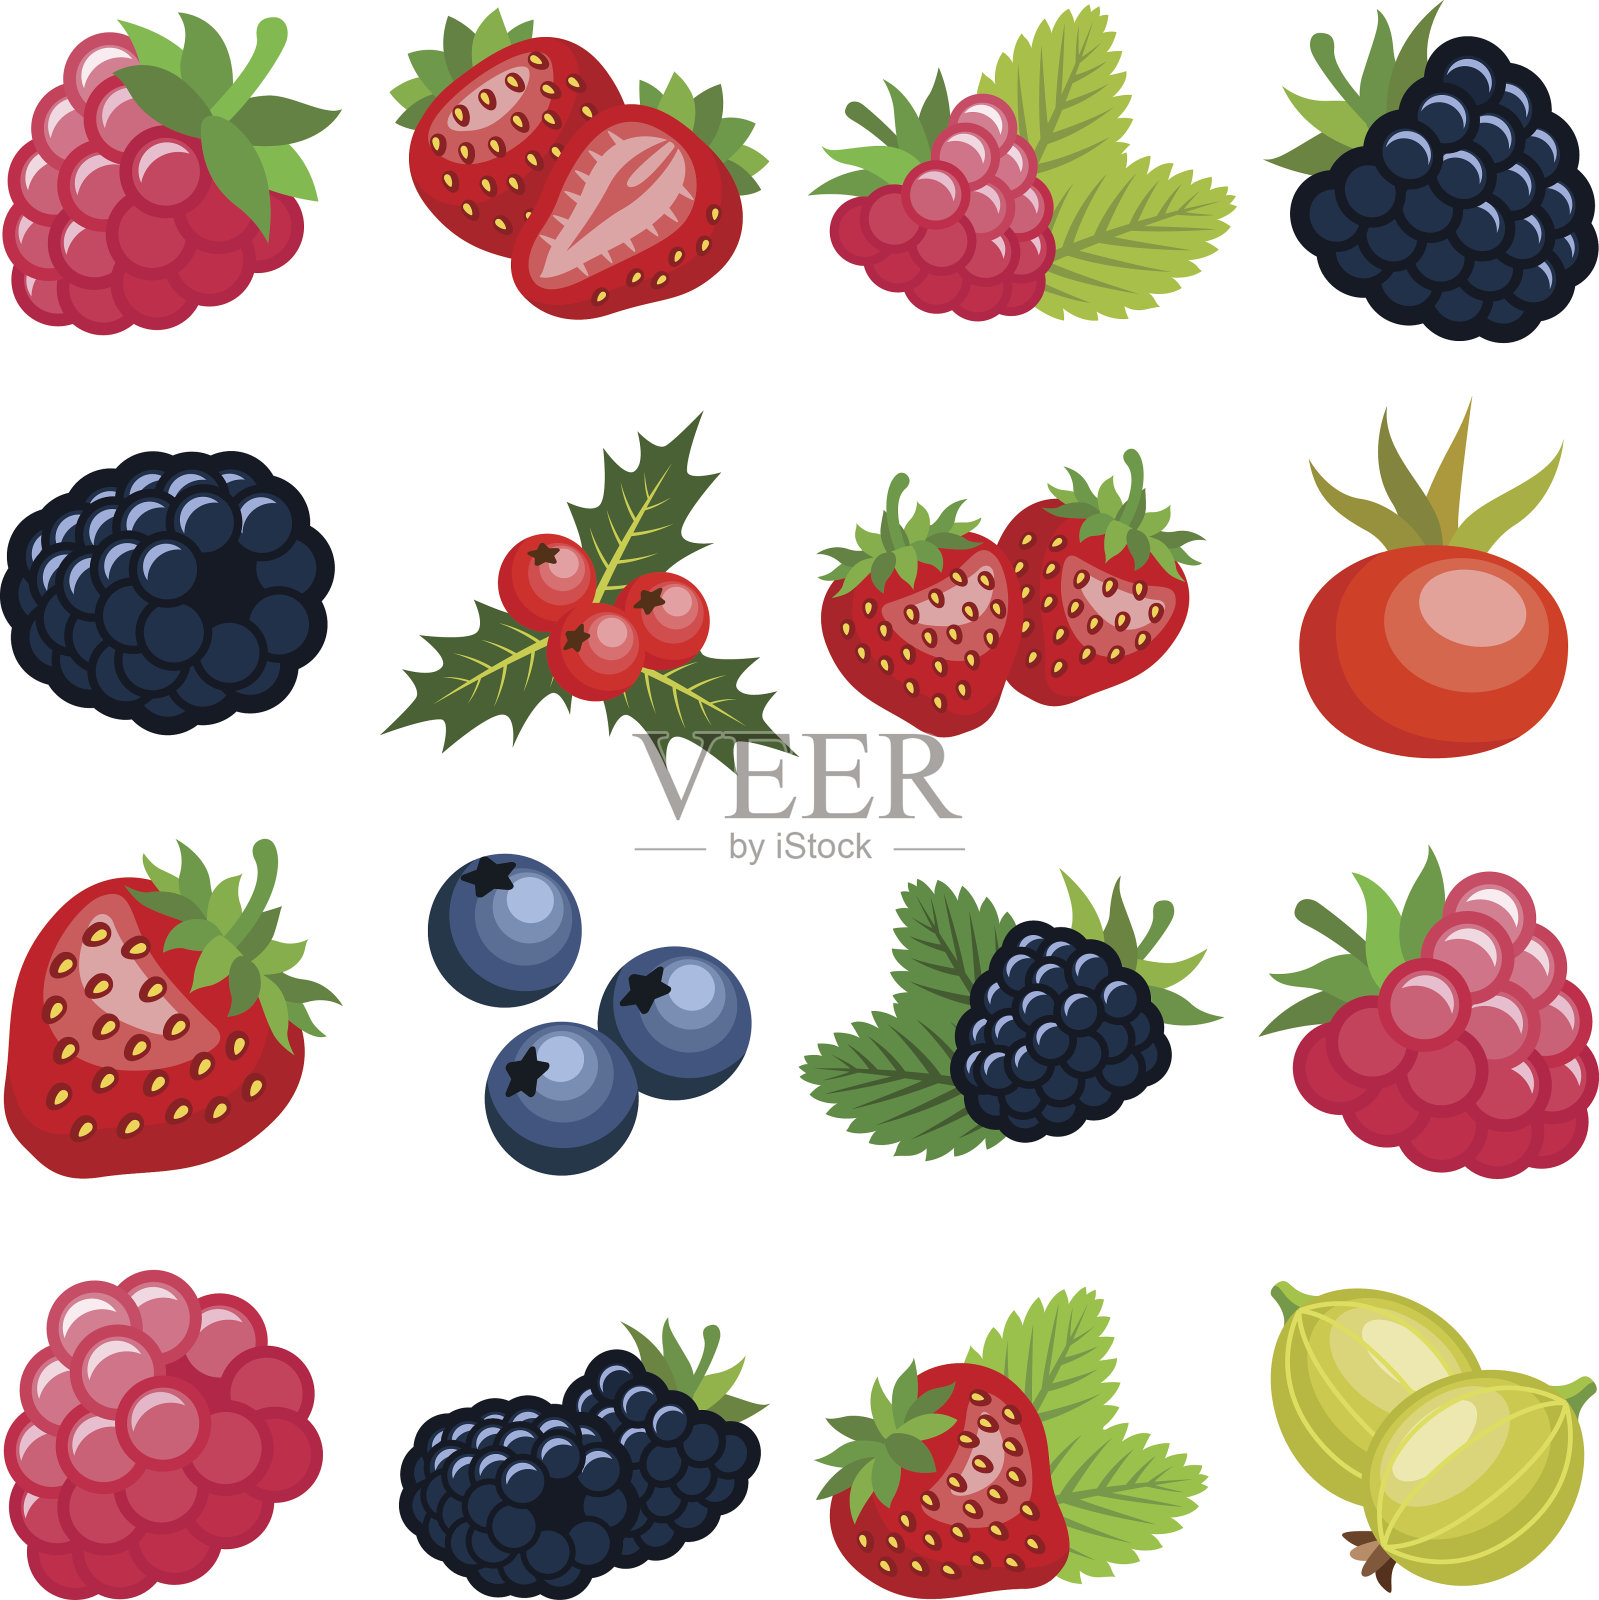 浆果的水果插画图片素材